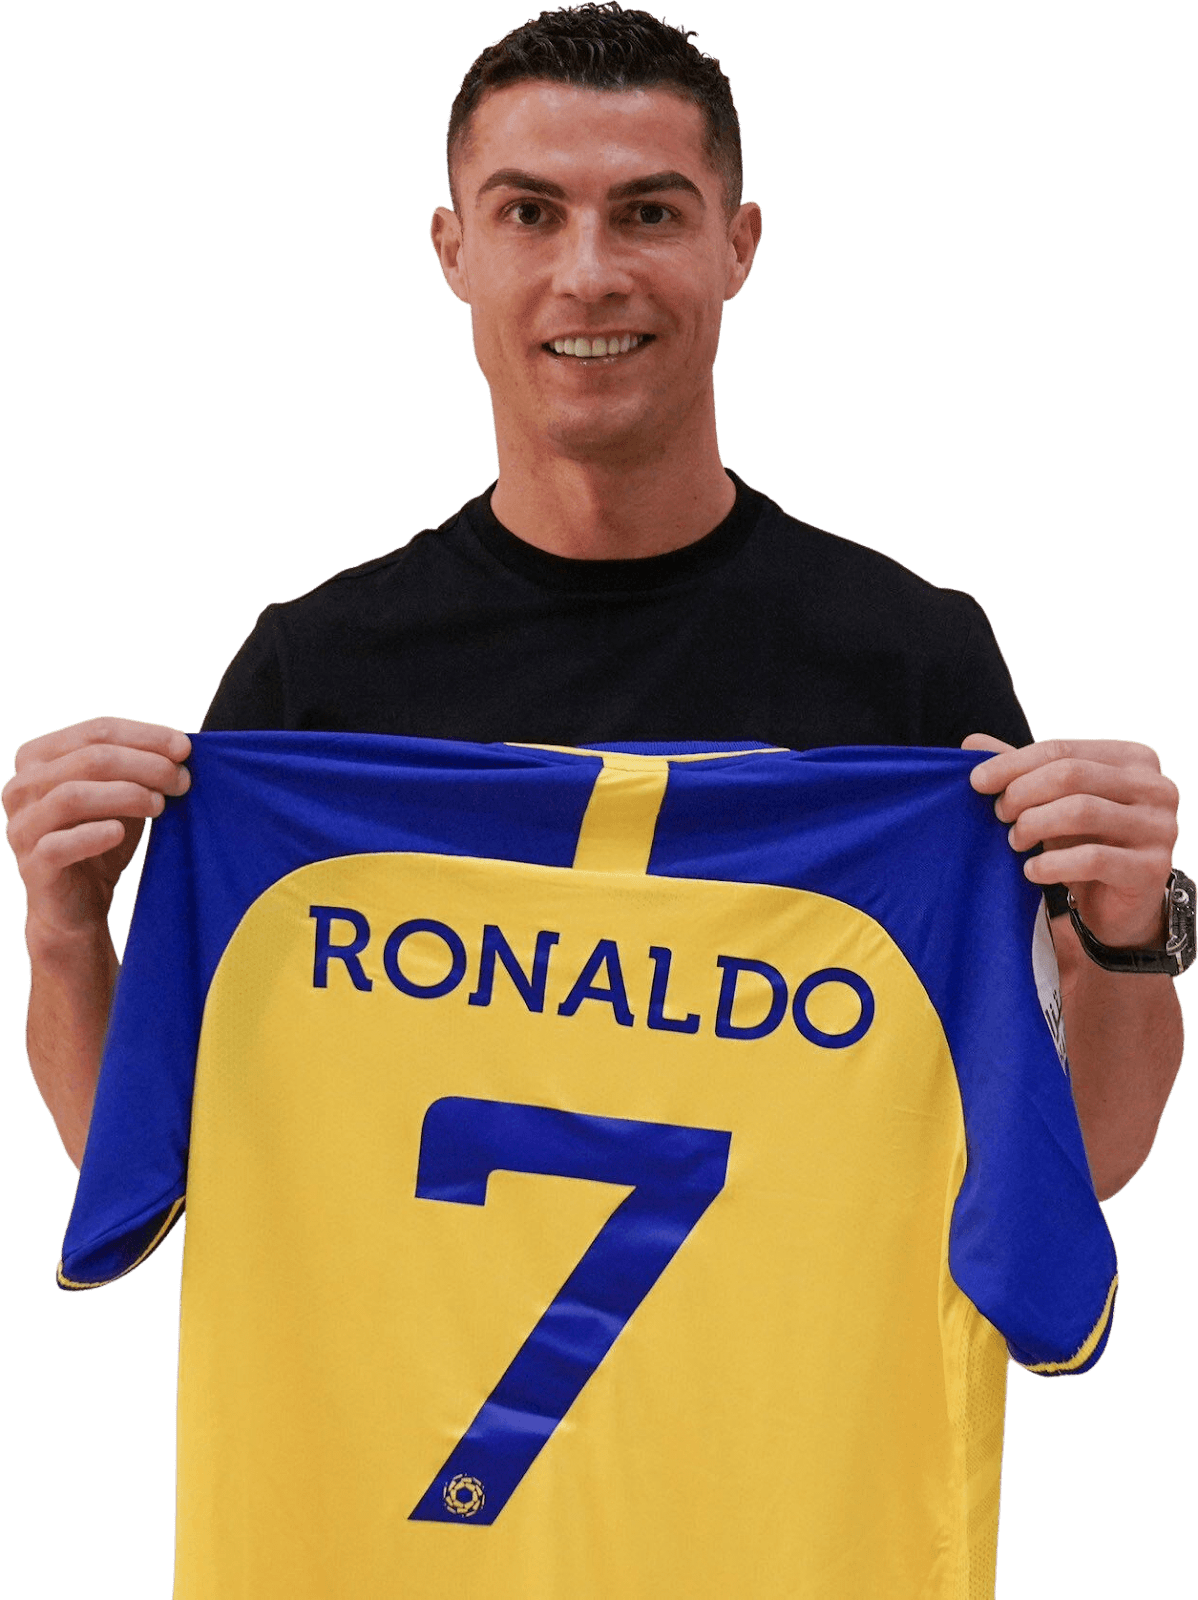 Ronaldo
